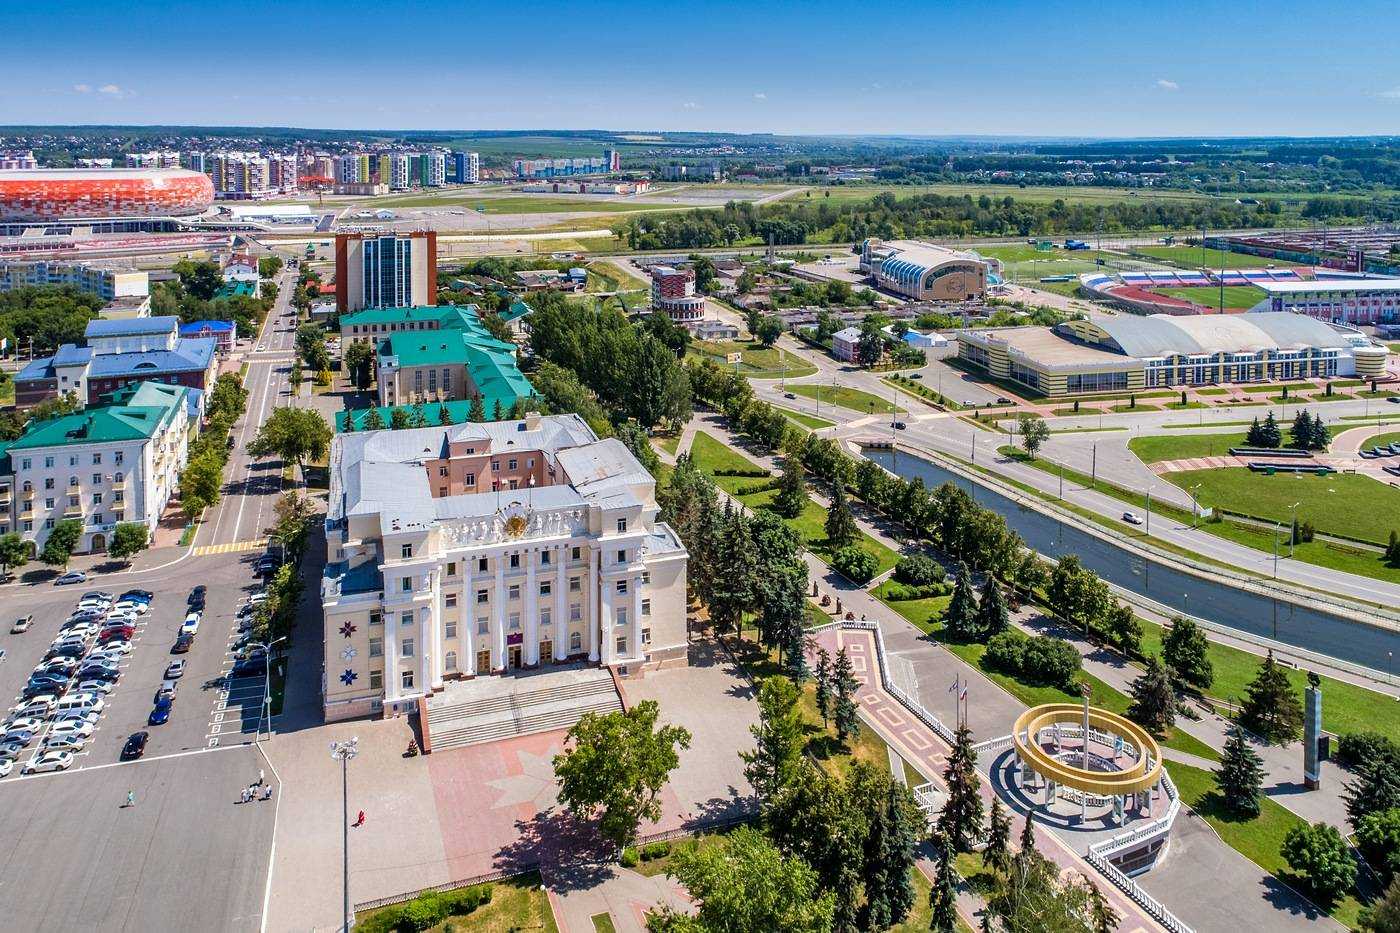 Саранск - красивый и современный город в Мордовии с четырехсотлетней историей, интересный своими соборами и музеями